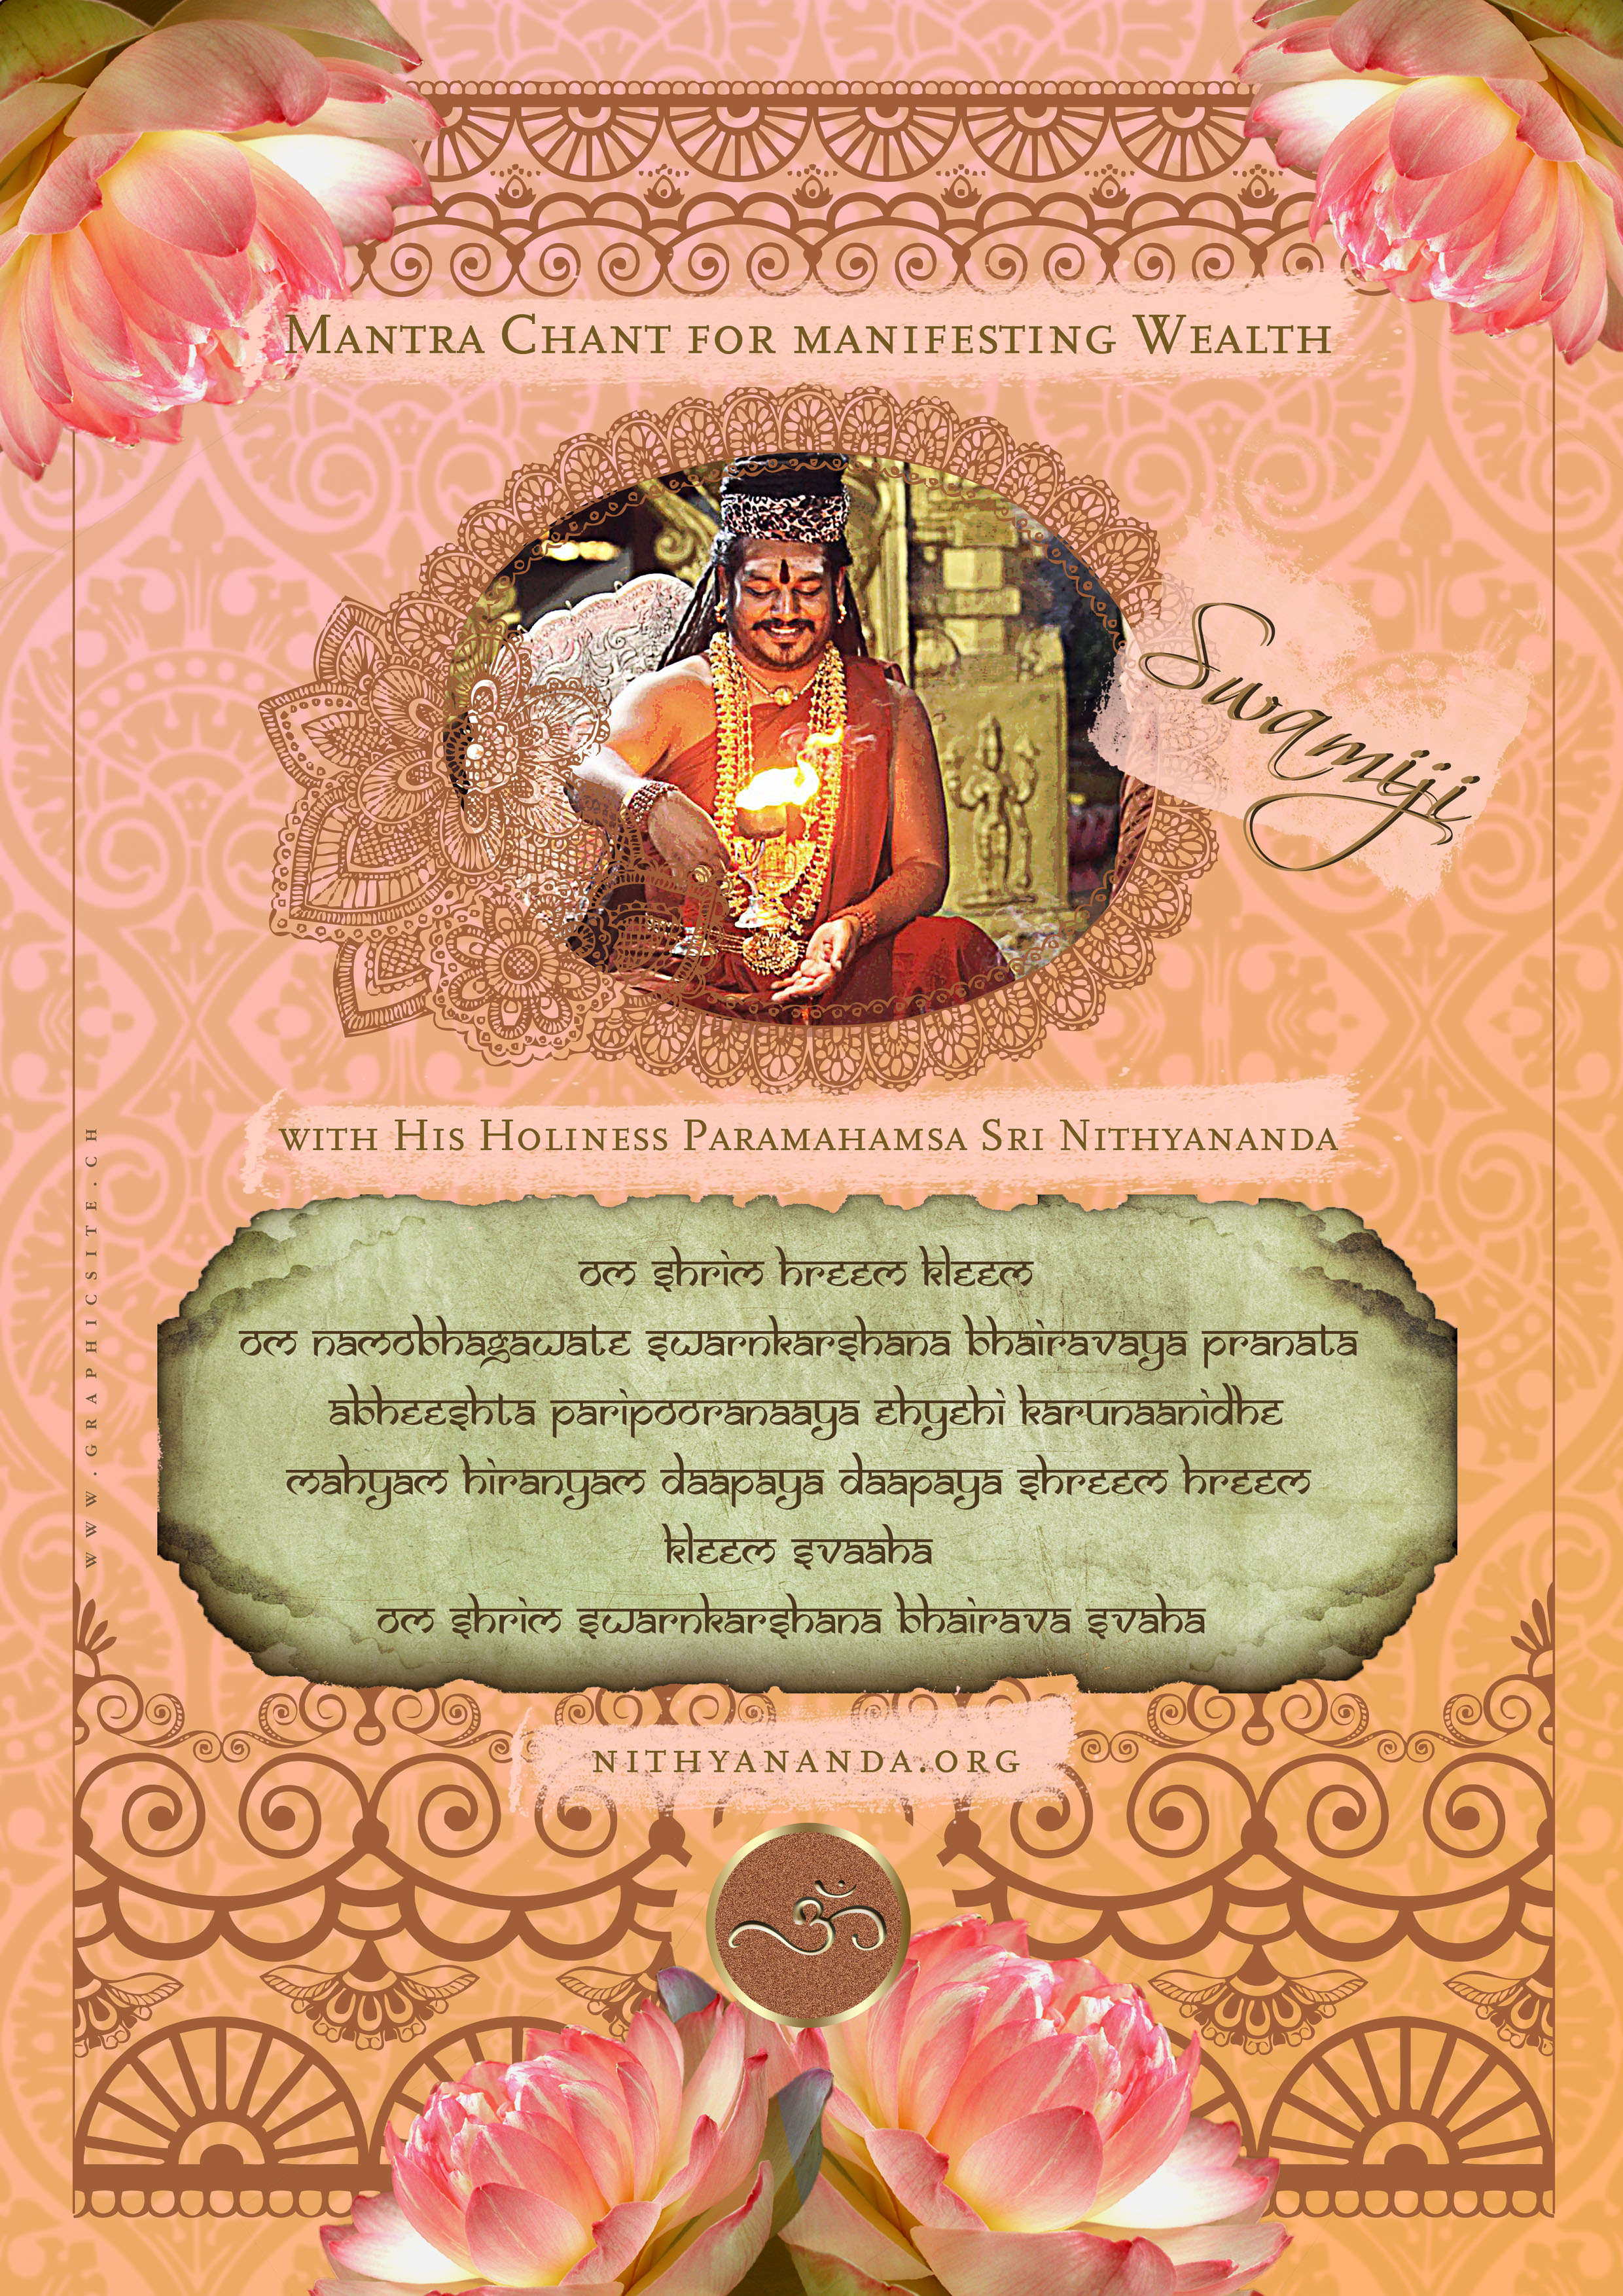 Wealth Poster ~ Mantra Chant with Paramahamsa Nithyananda